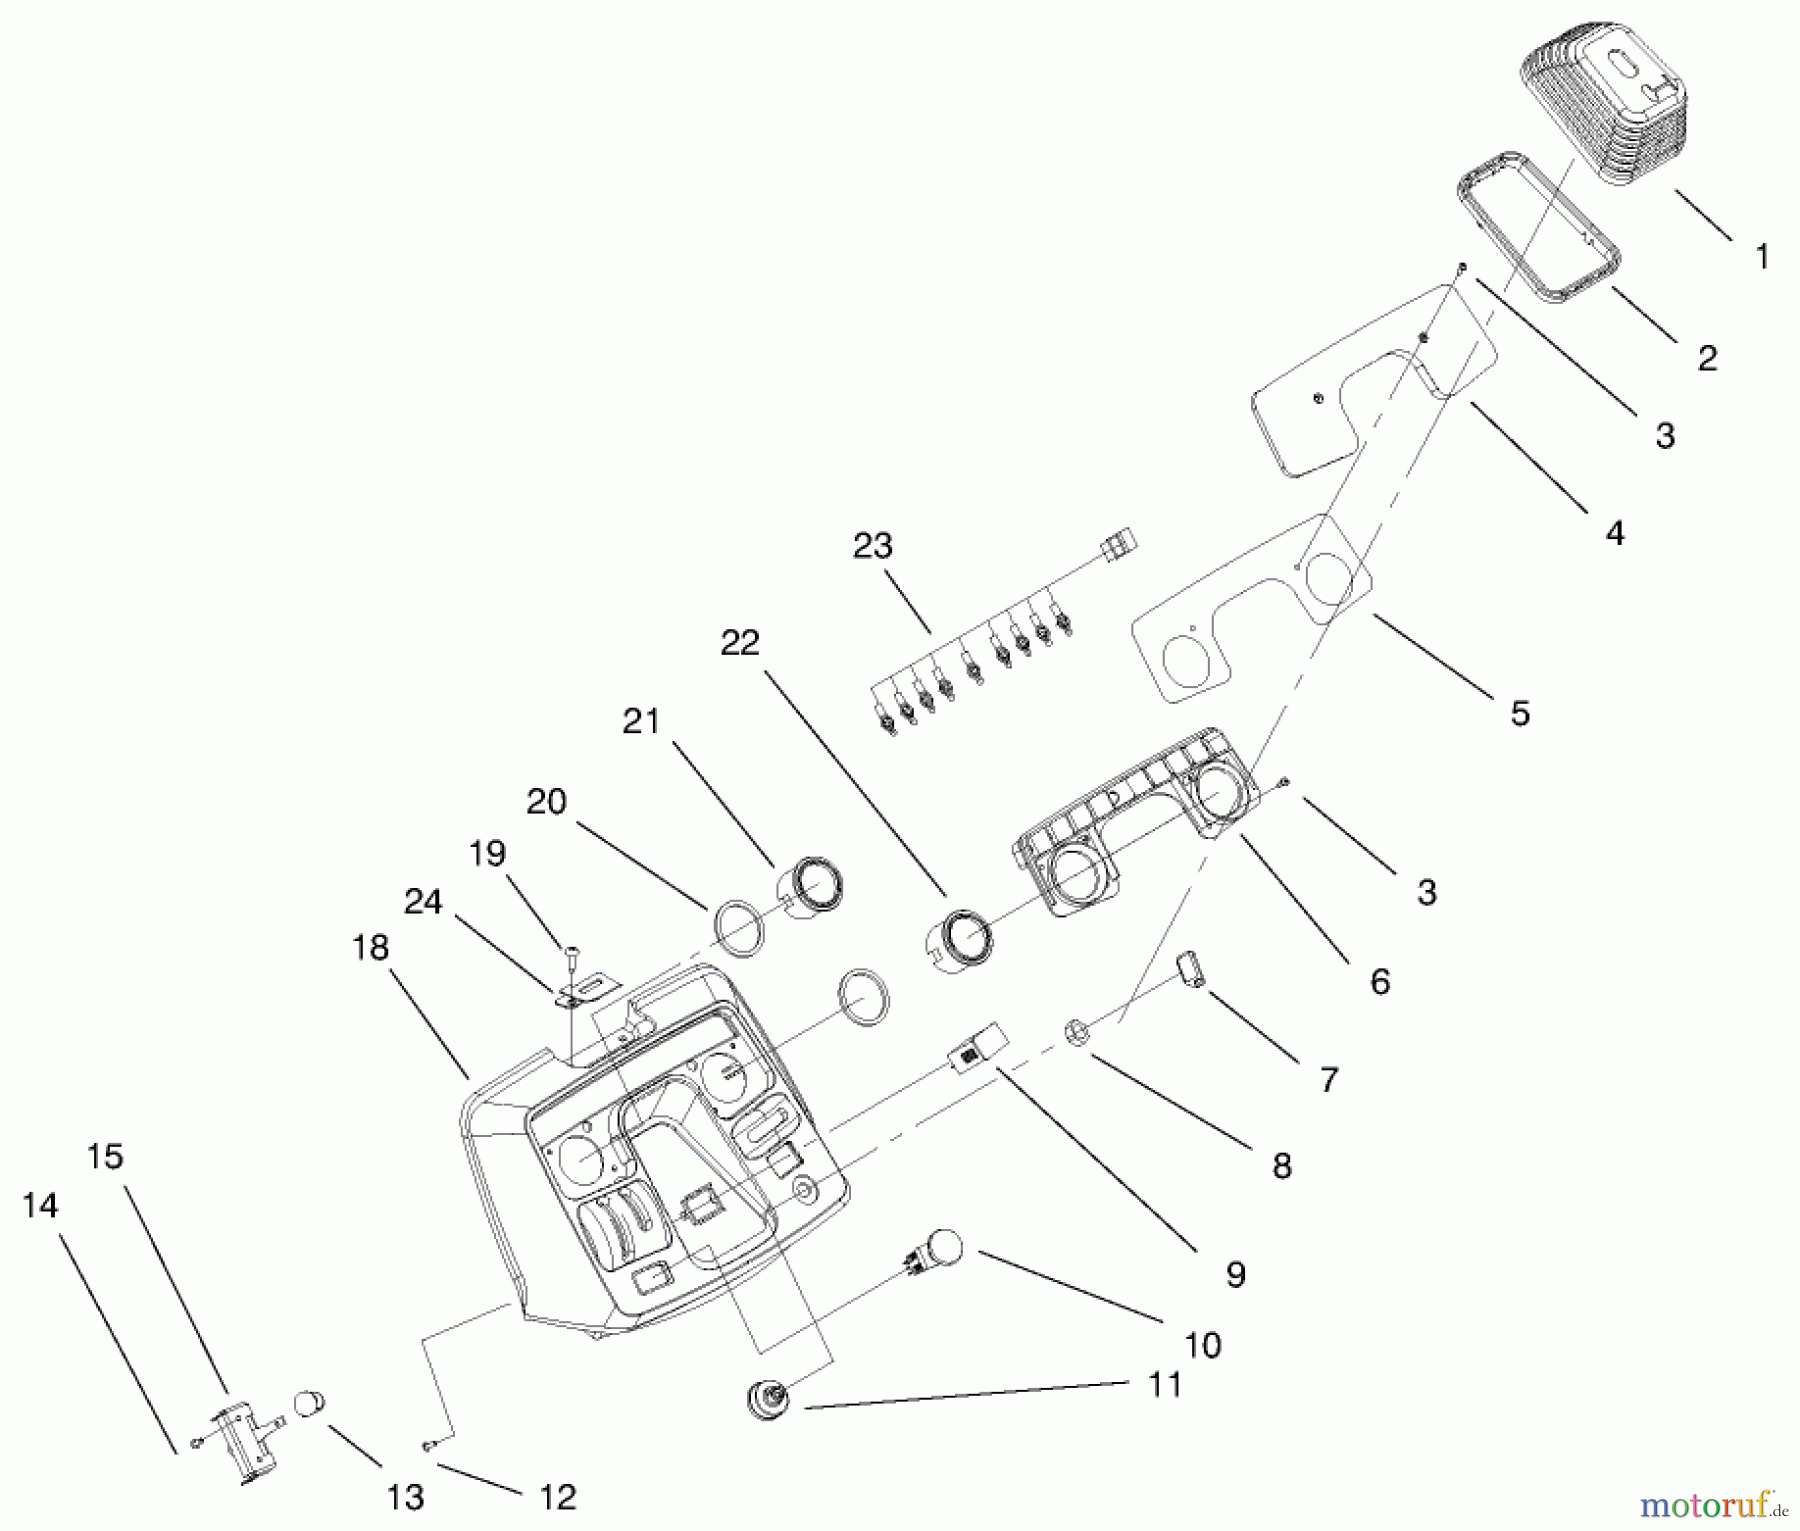  Toro Neu Mowers, Lawn & Garden Tractor Seite 1 73590 (523Dxi) - Toro 523Dxi Garden Tractor, 1999 (9900001-9999999) DASH ASSEMBLY